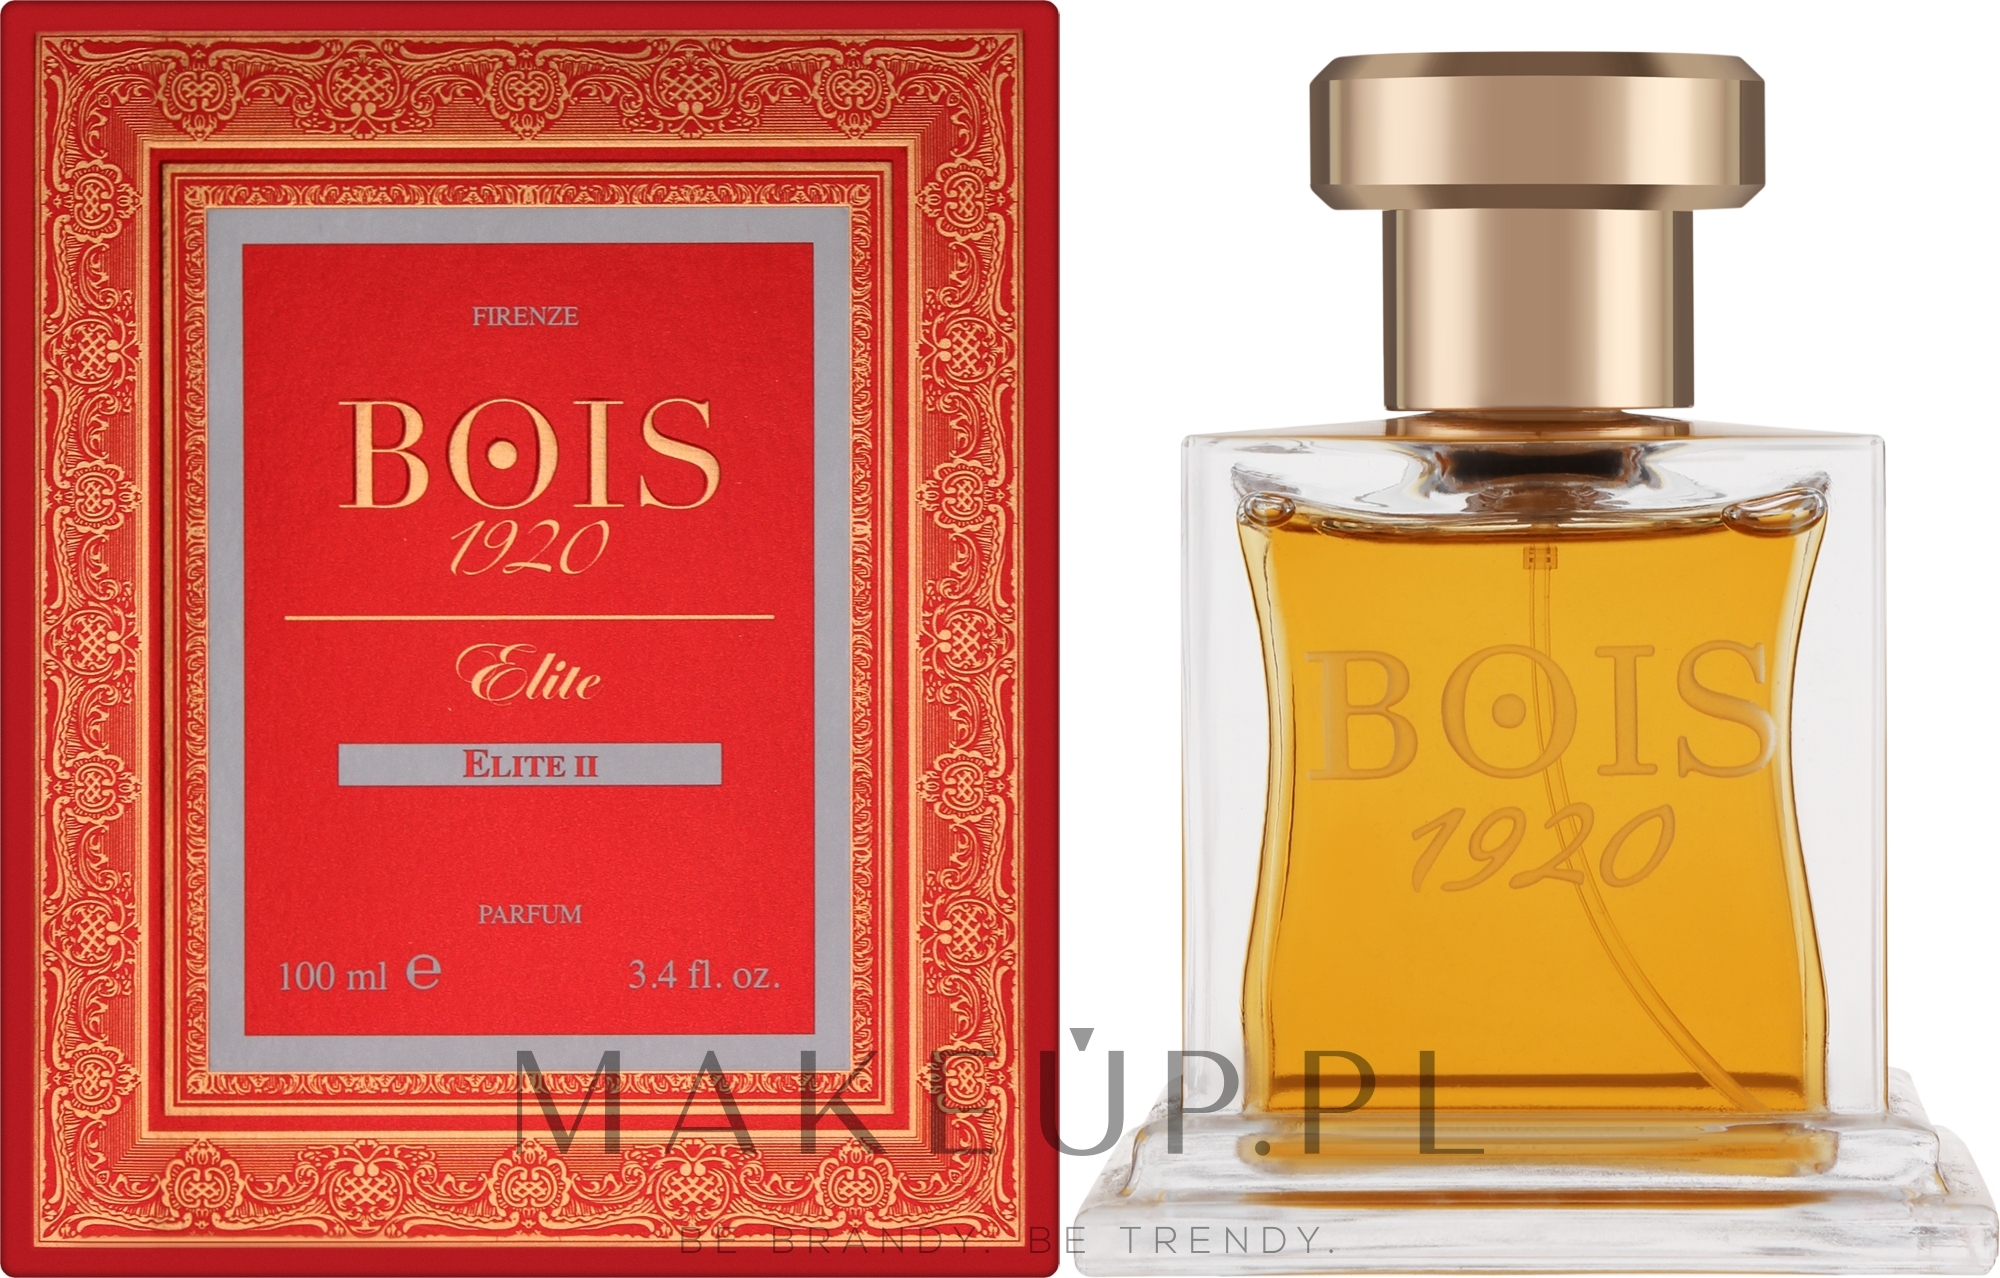 Bois 1920 Elite II - Perfumy — Zdjęcie 100 ml